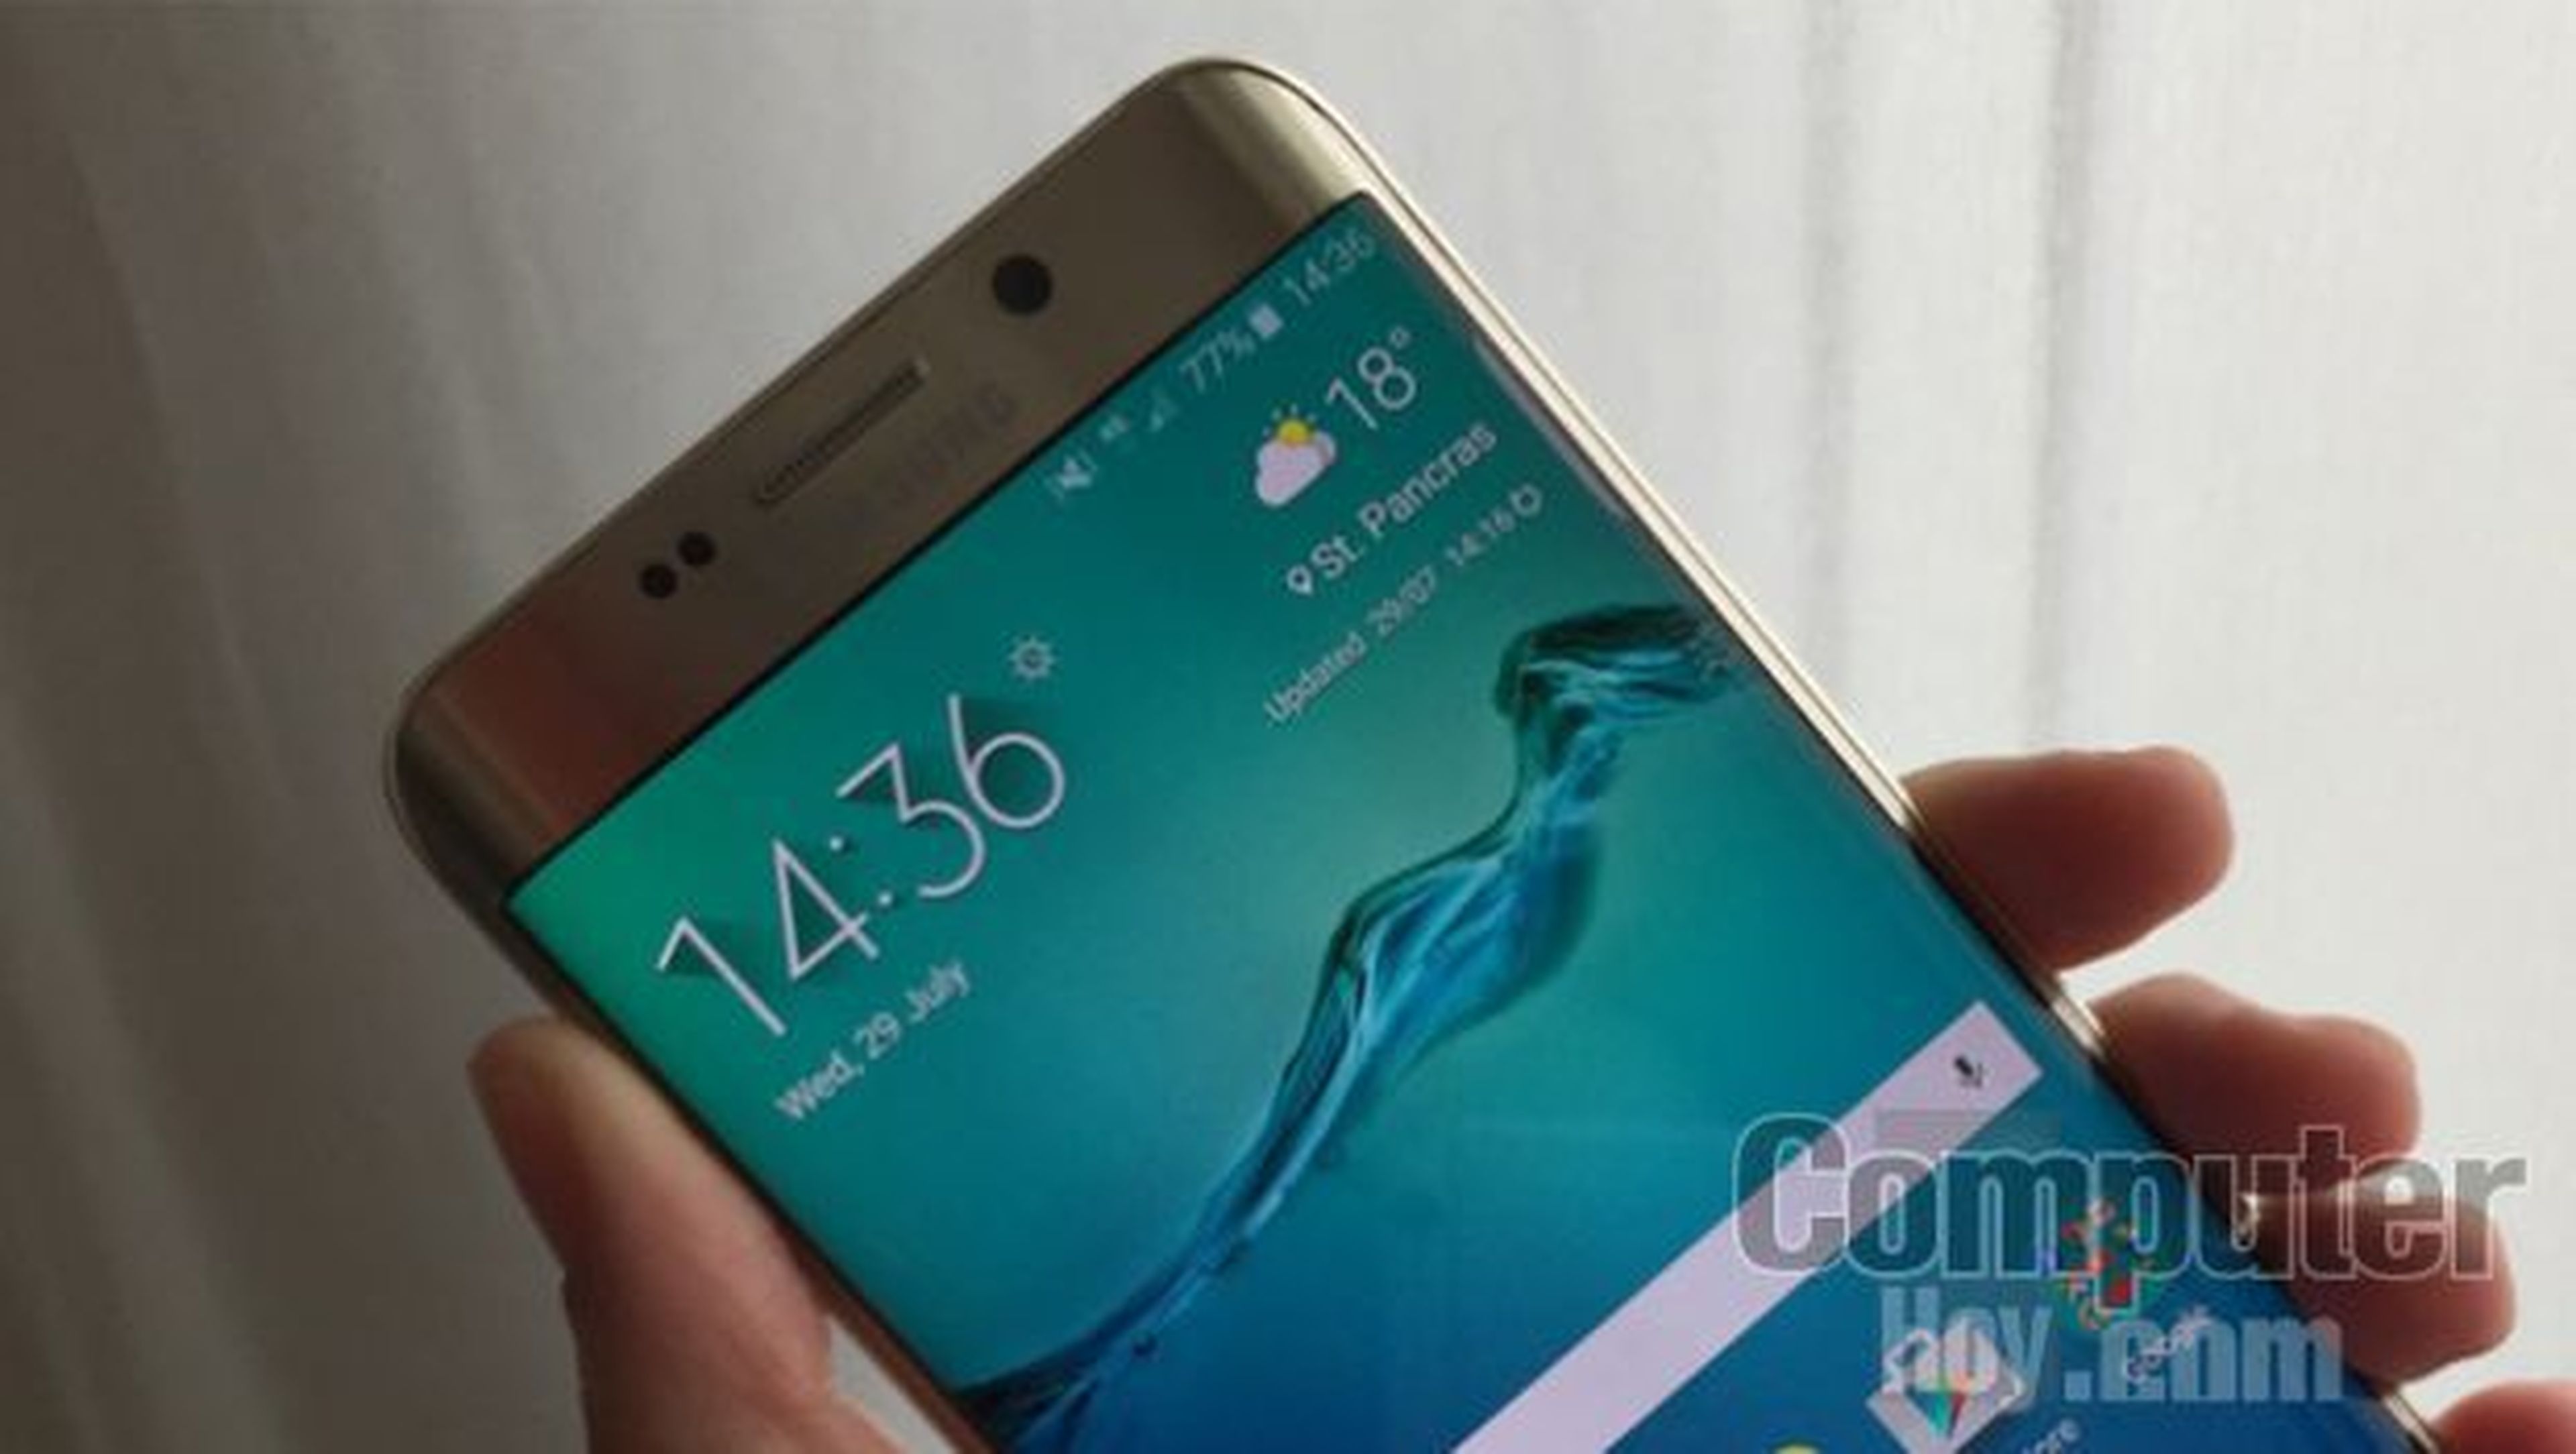 Samsung Galaxy S6 Edge+, toma de contacto y primeras impresiones